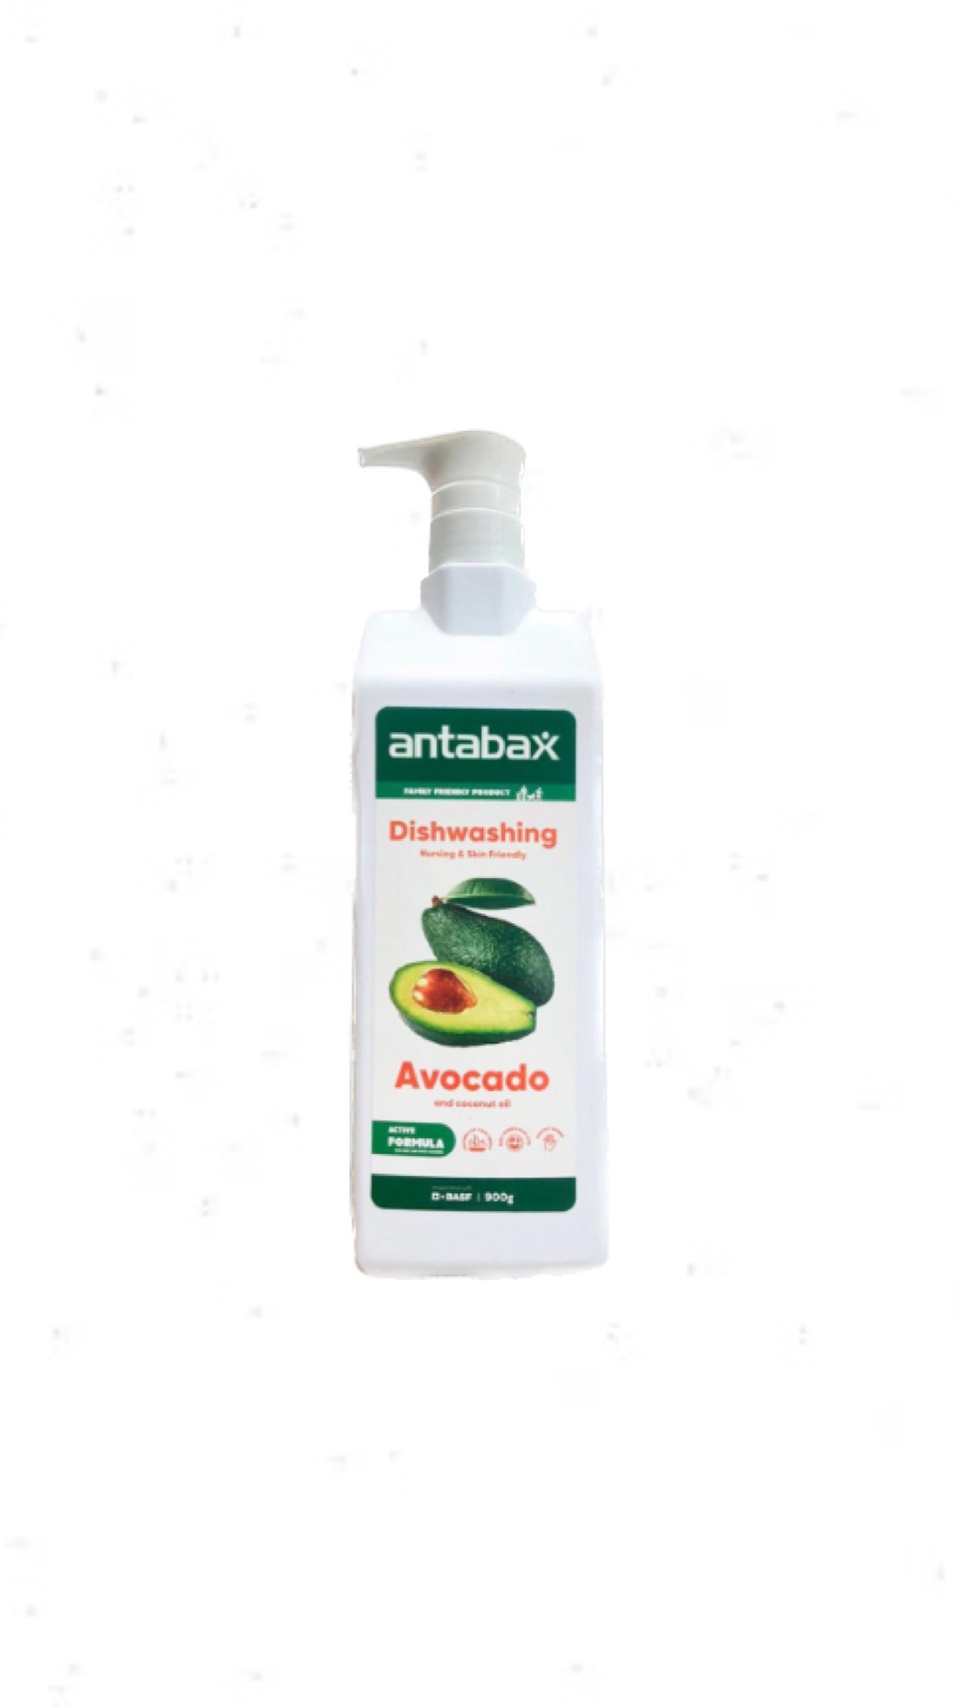 Средство для мытья посуды Авокадо, Antabax 900 - 350 ₽, заказать онлайн.